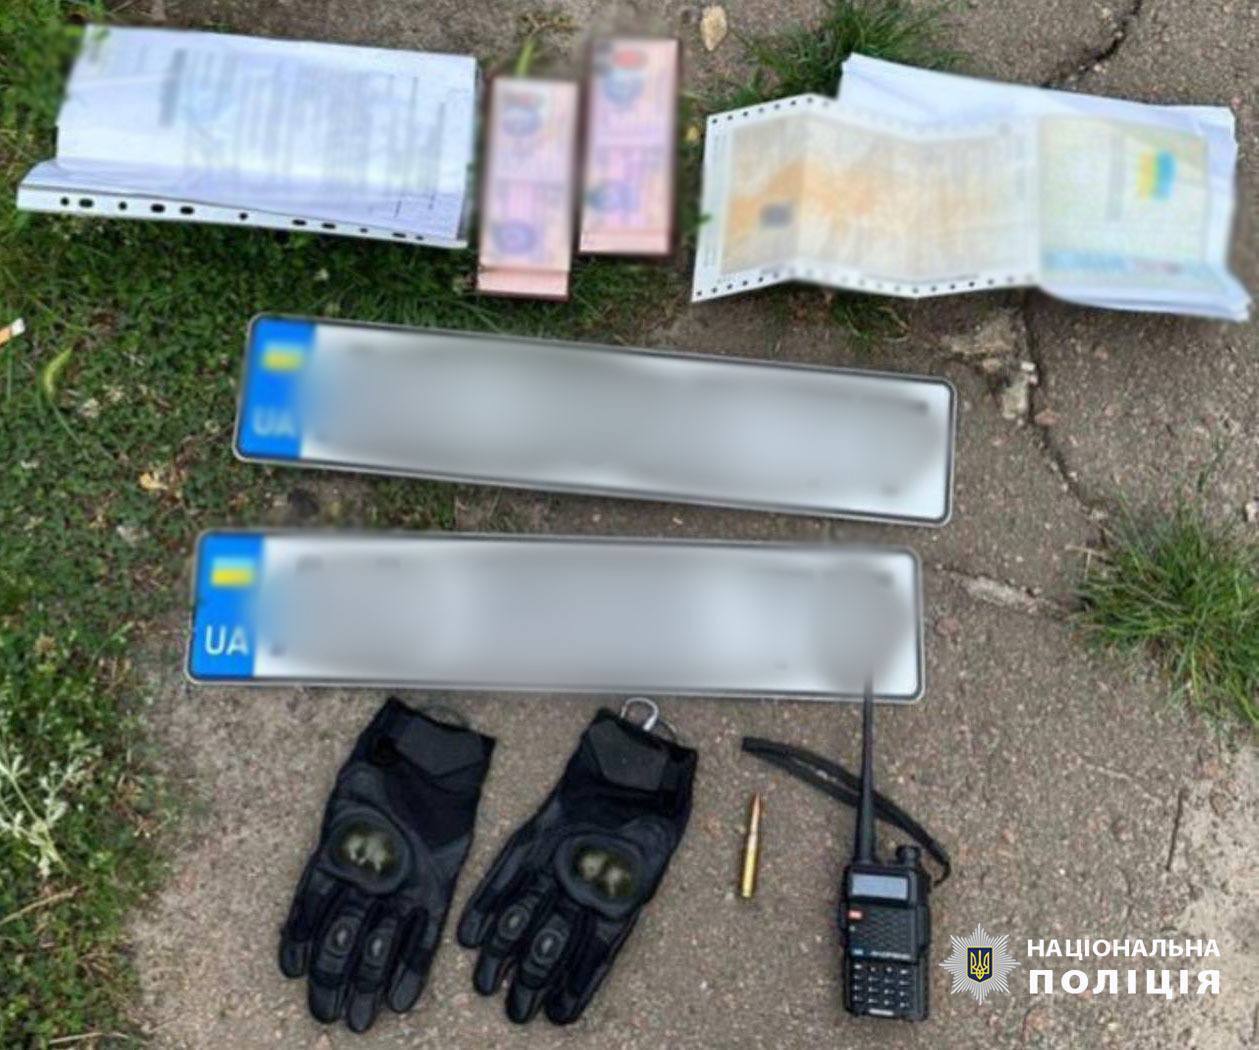 В Киеве двое "правоохранителей" похитили врача-кардиолога и требовали у него 2 млн грн. Подробности, фото и видео